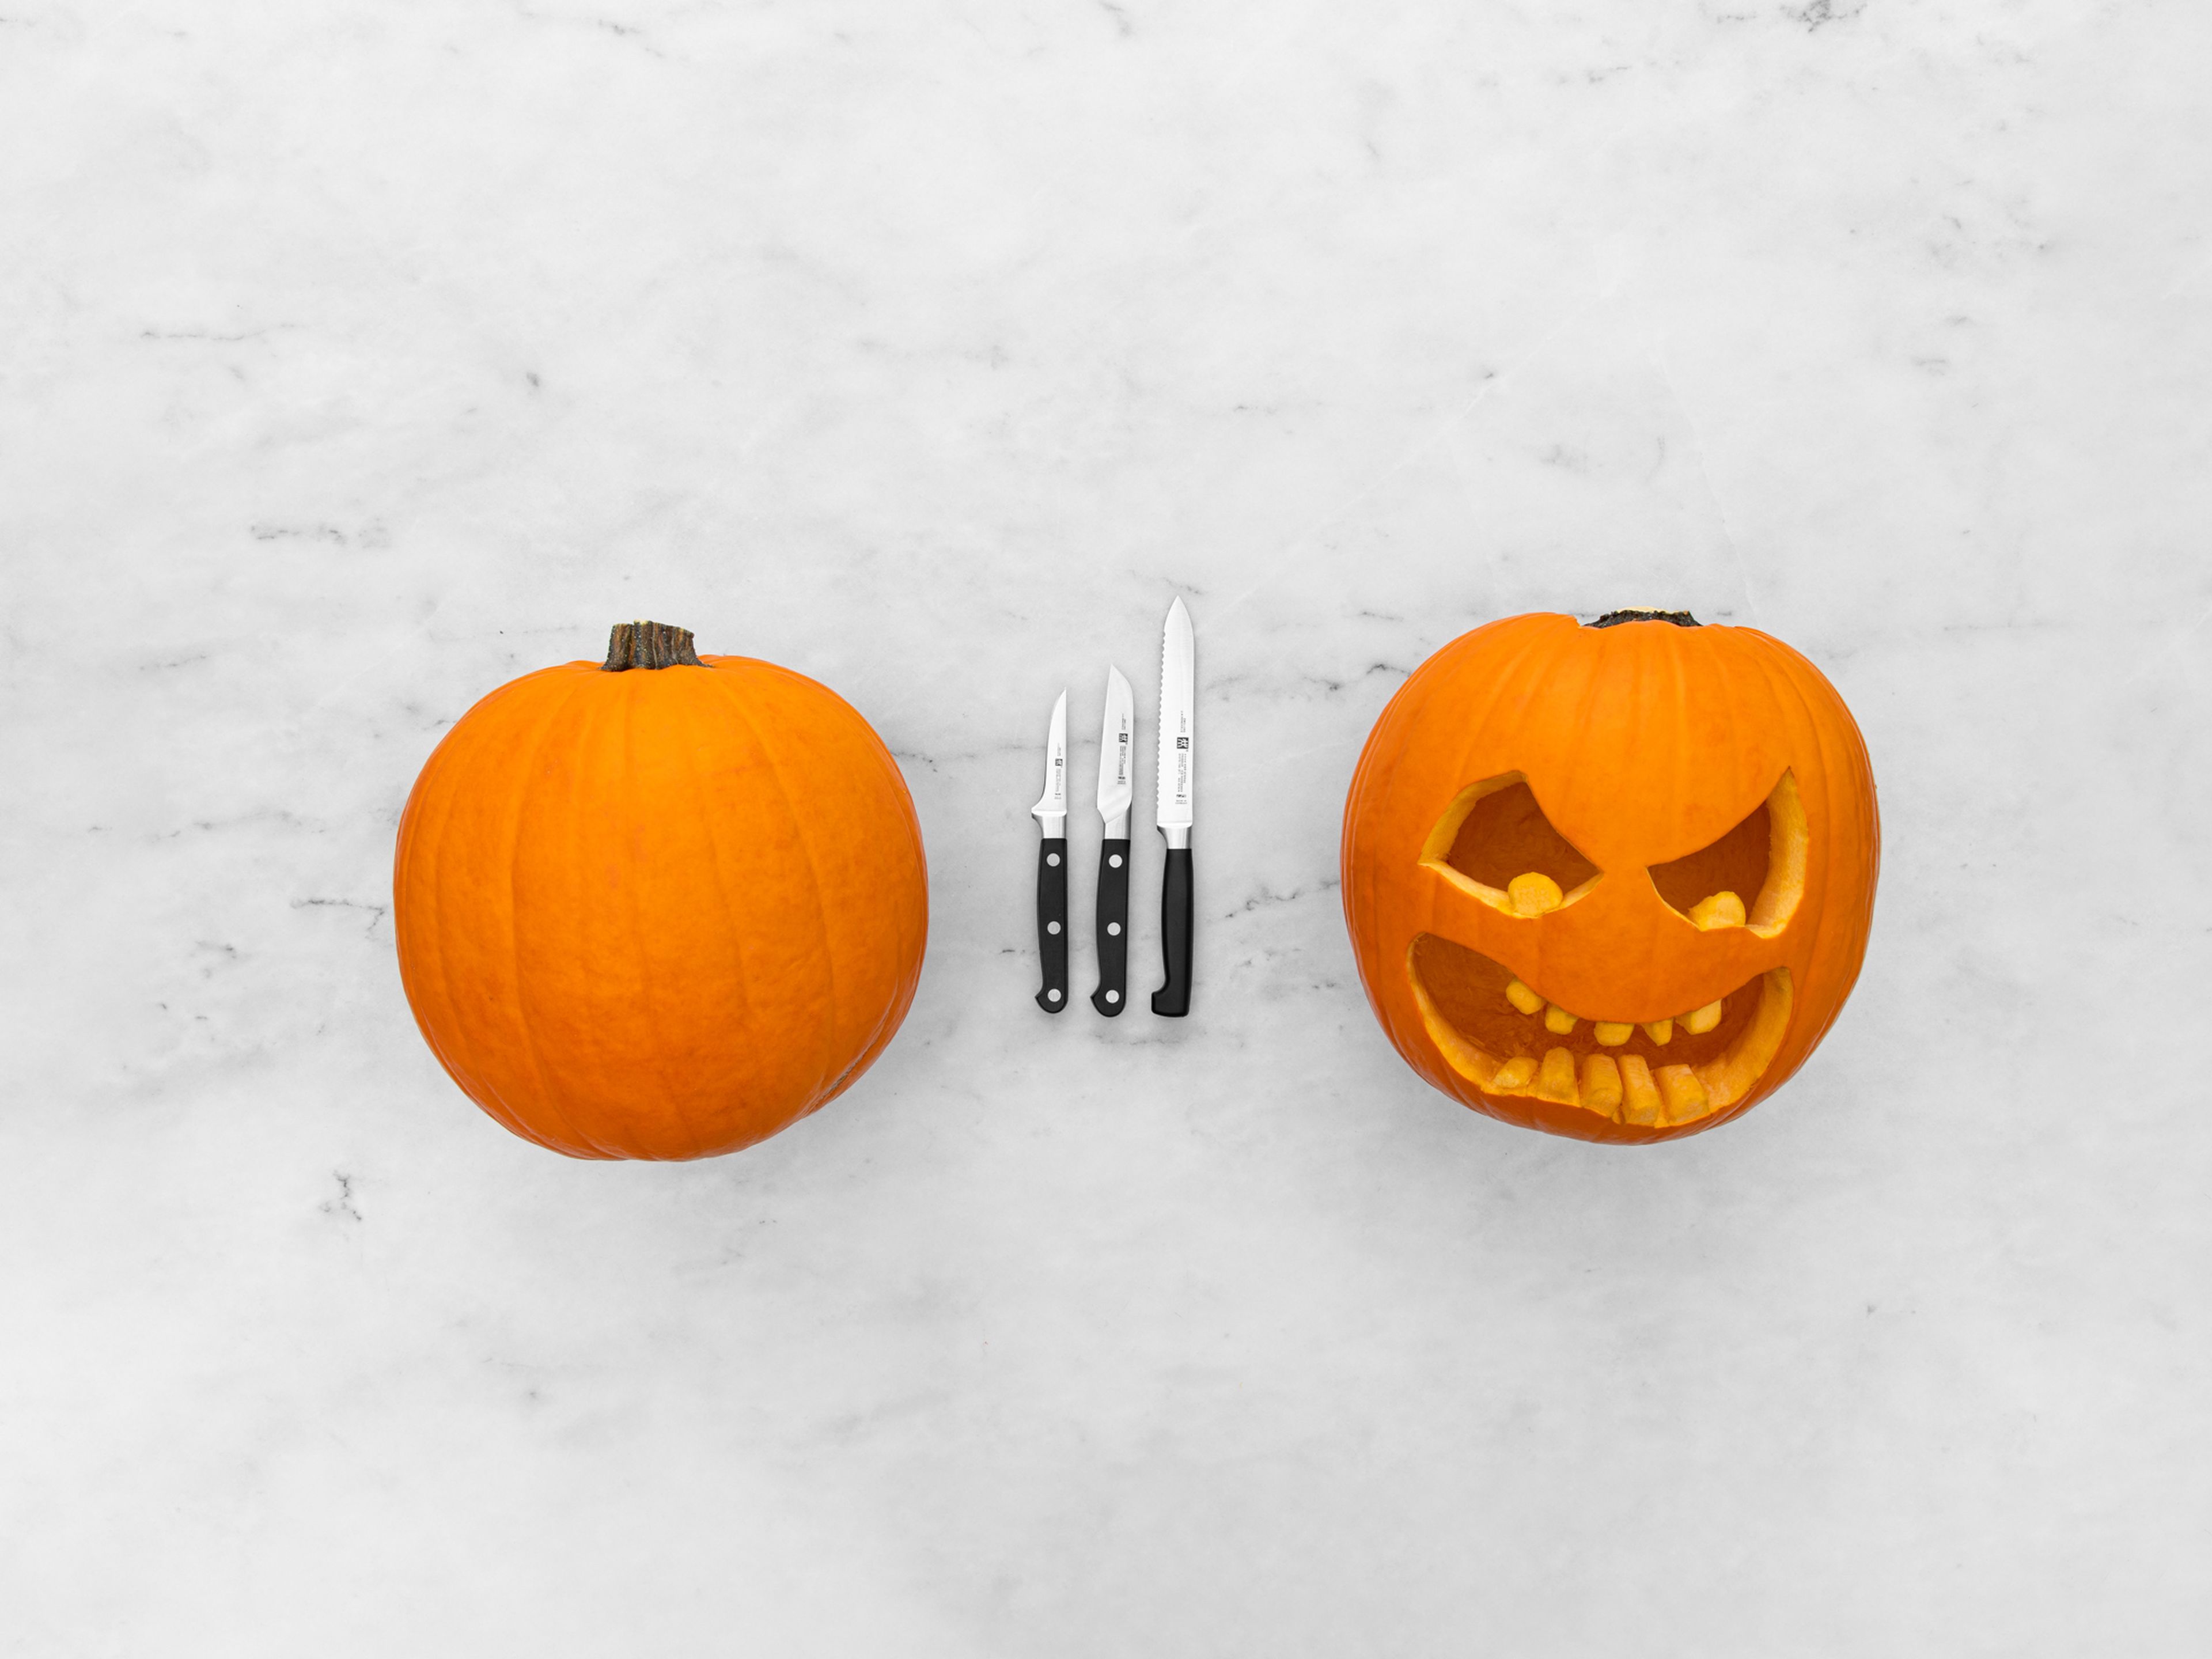 How to carve a pumpkin like a pro